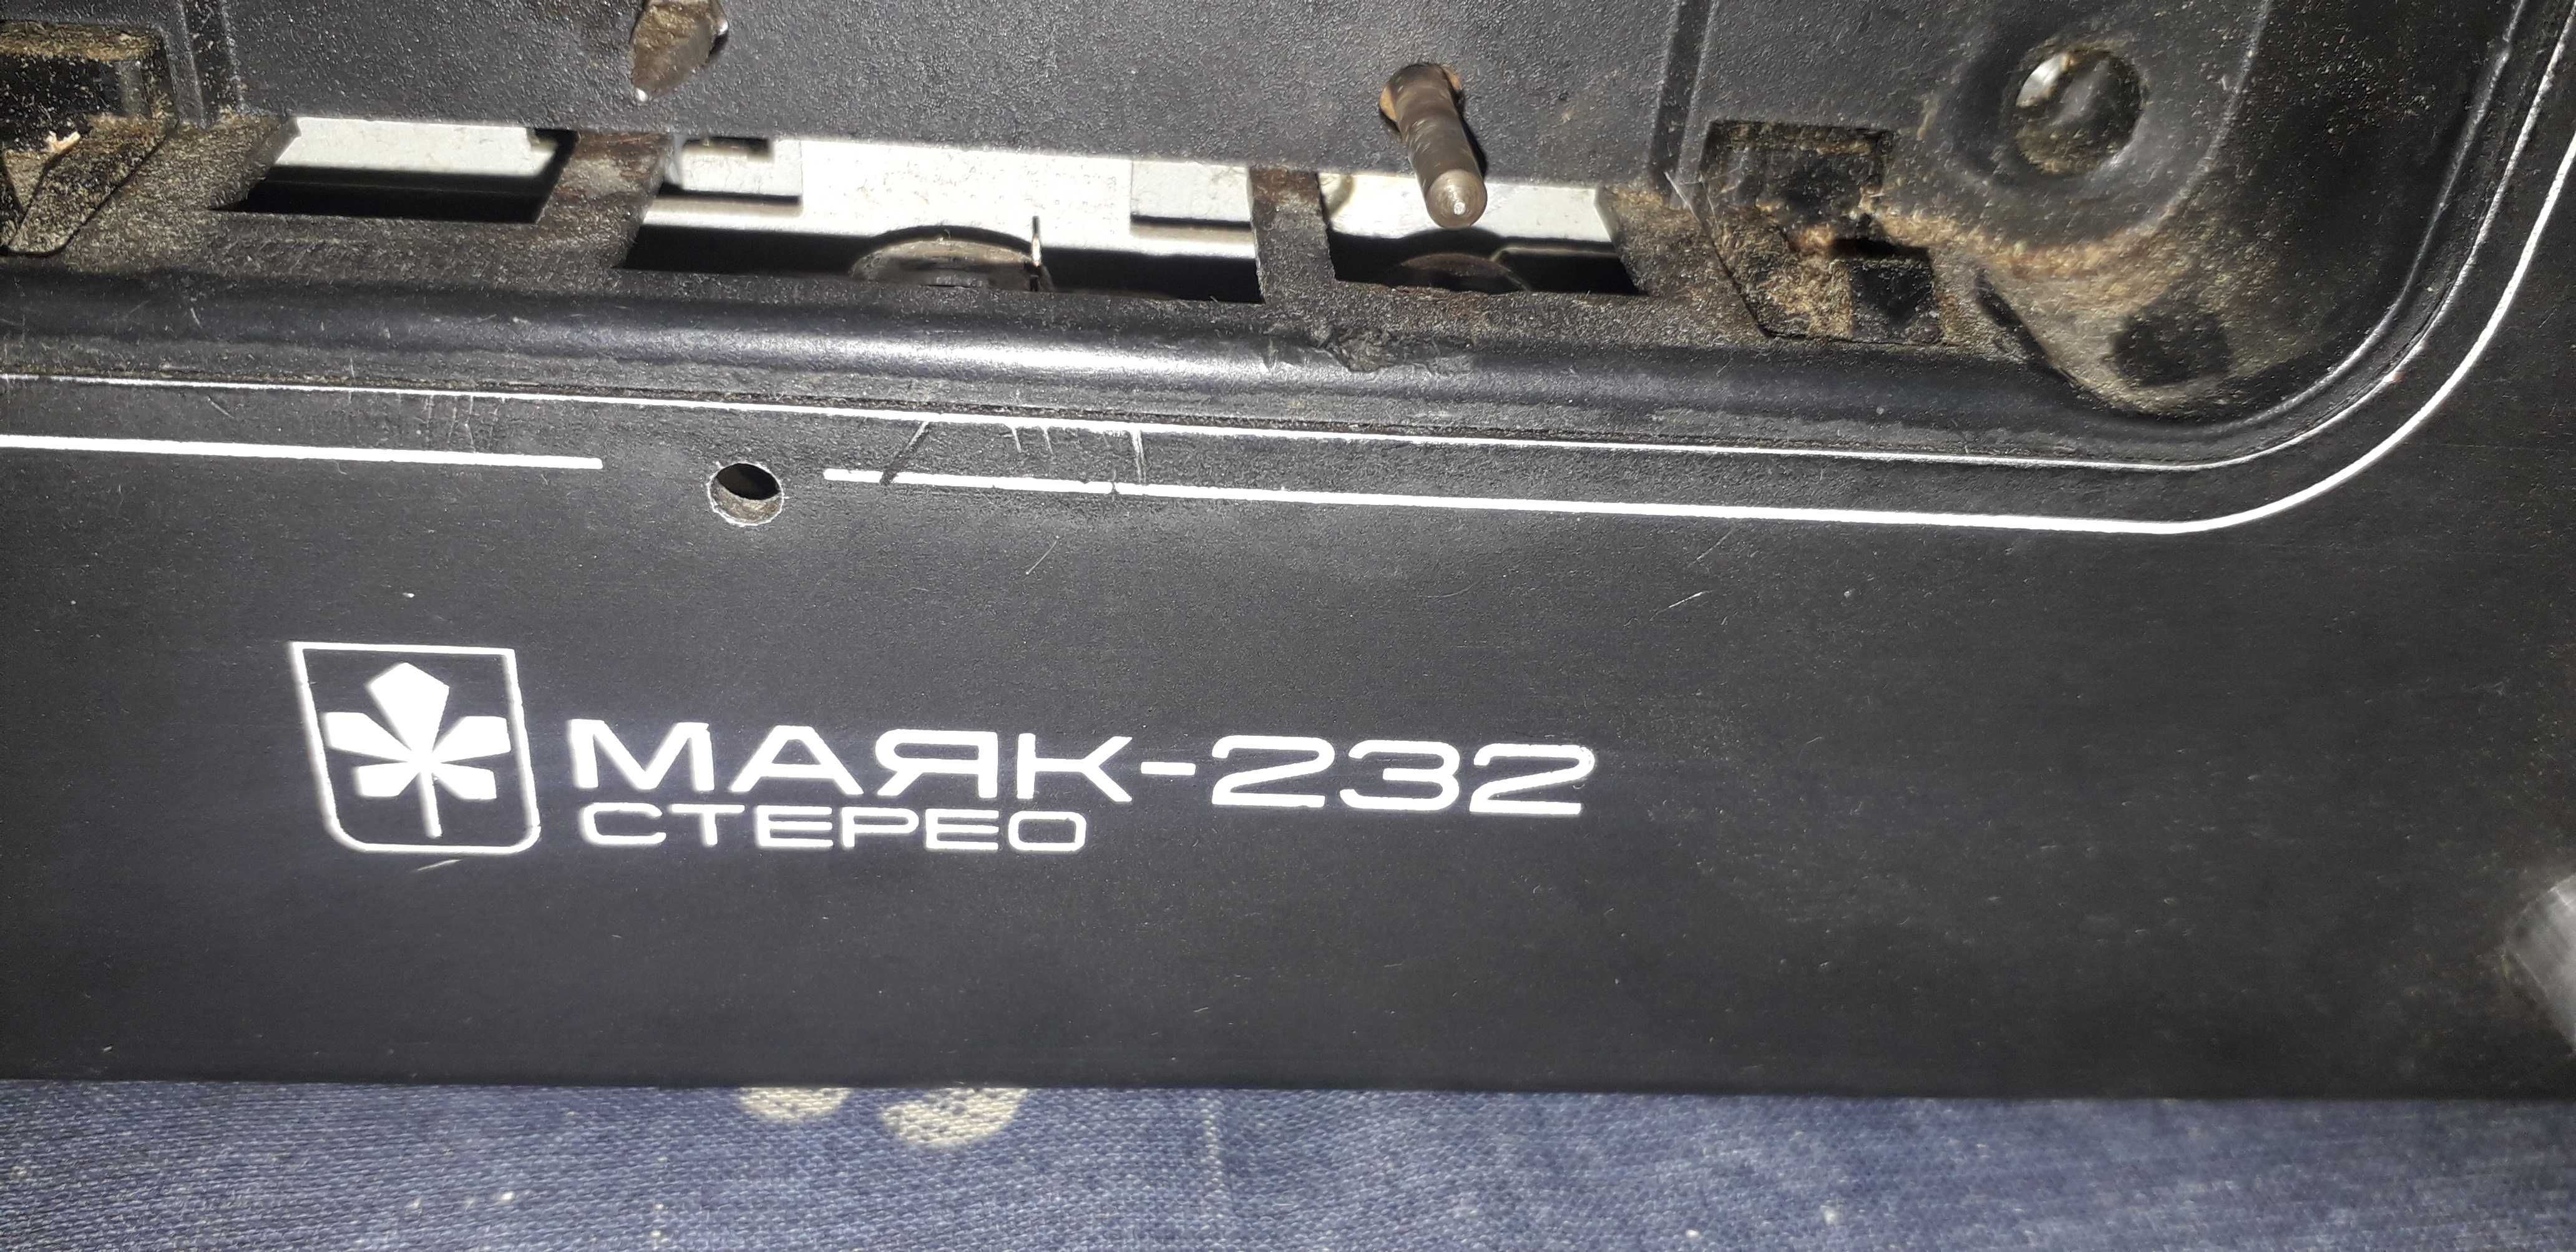 Магнитофон Маяк -232 стерео